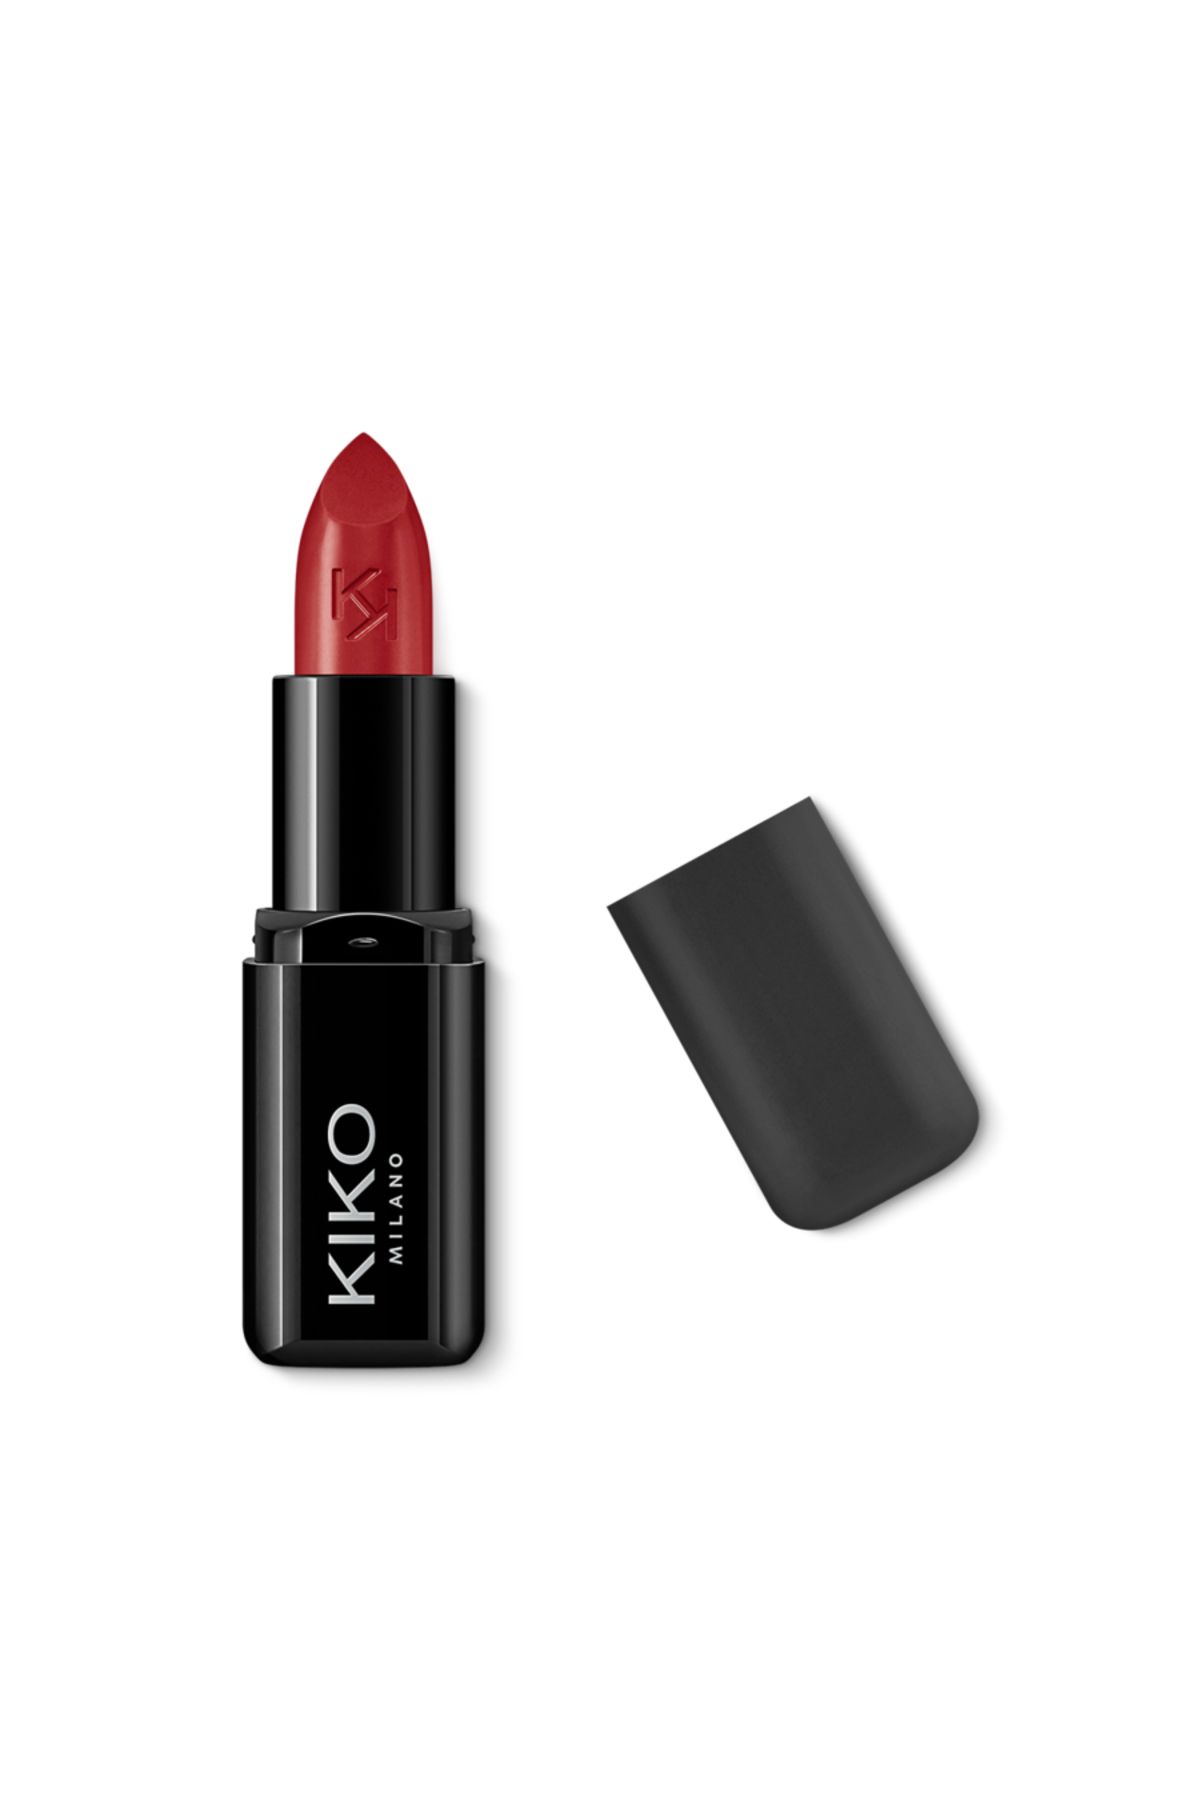 KIKO RUJ - Smart Fusion Lipstick - 459 Strawberry Red